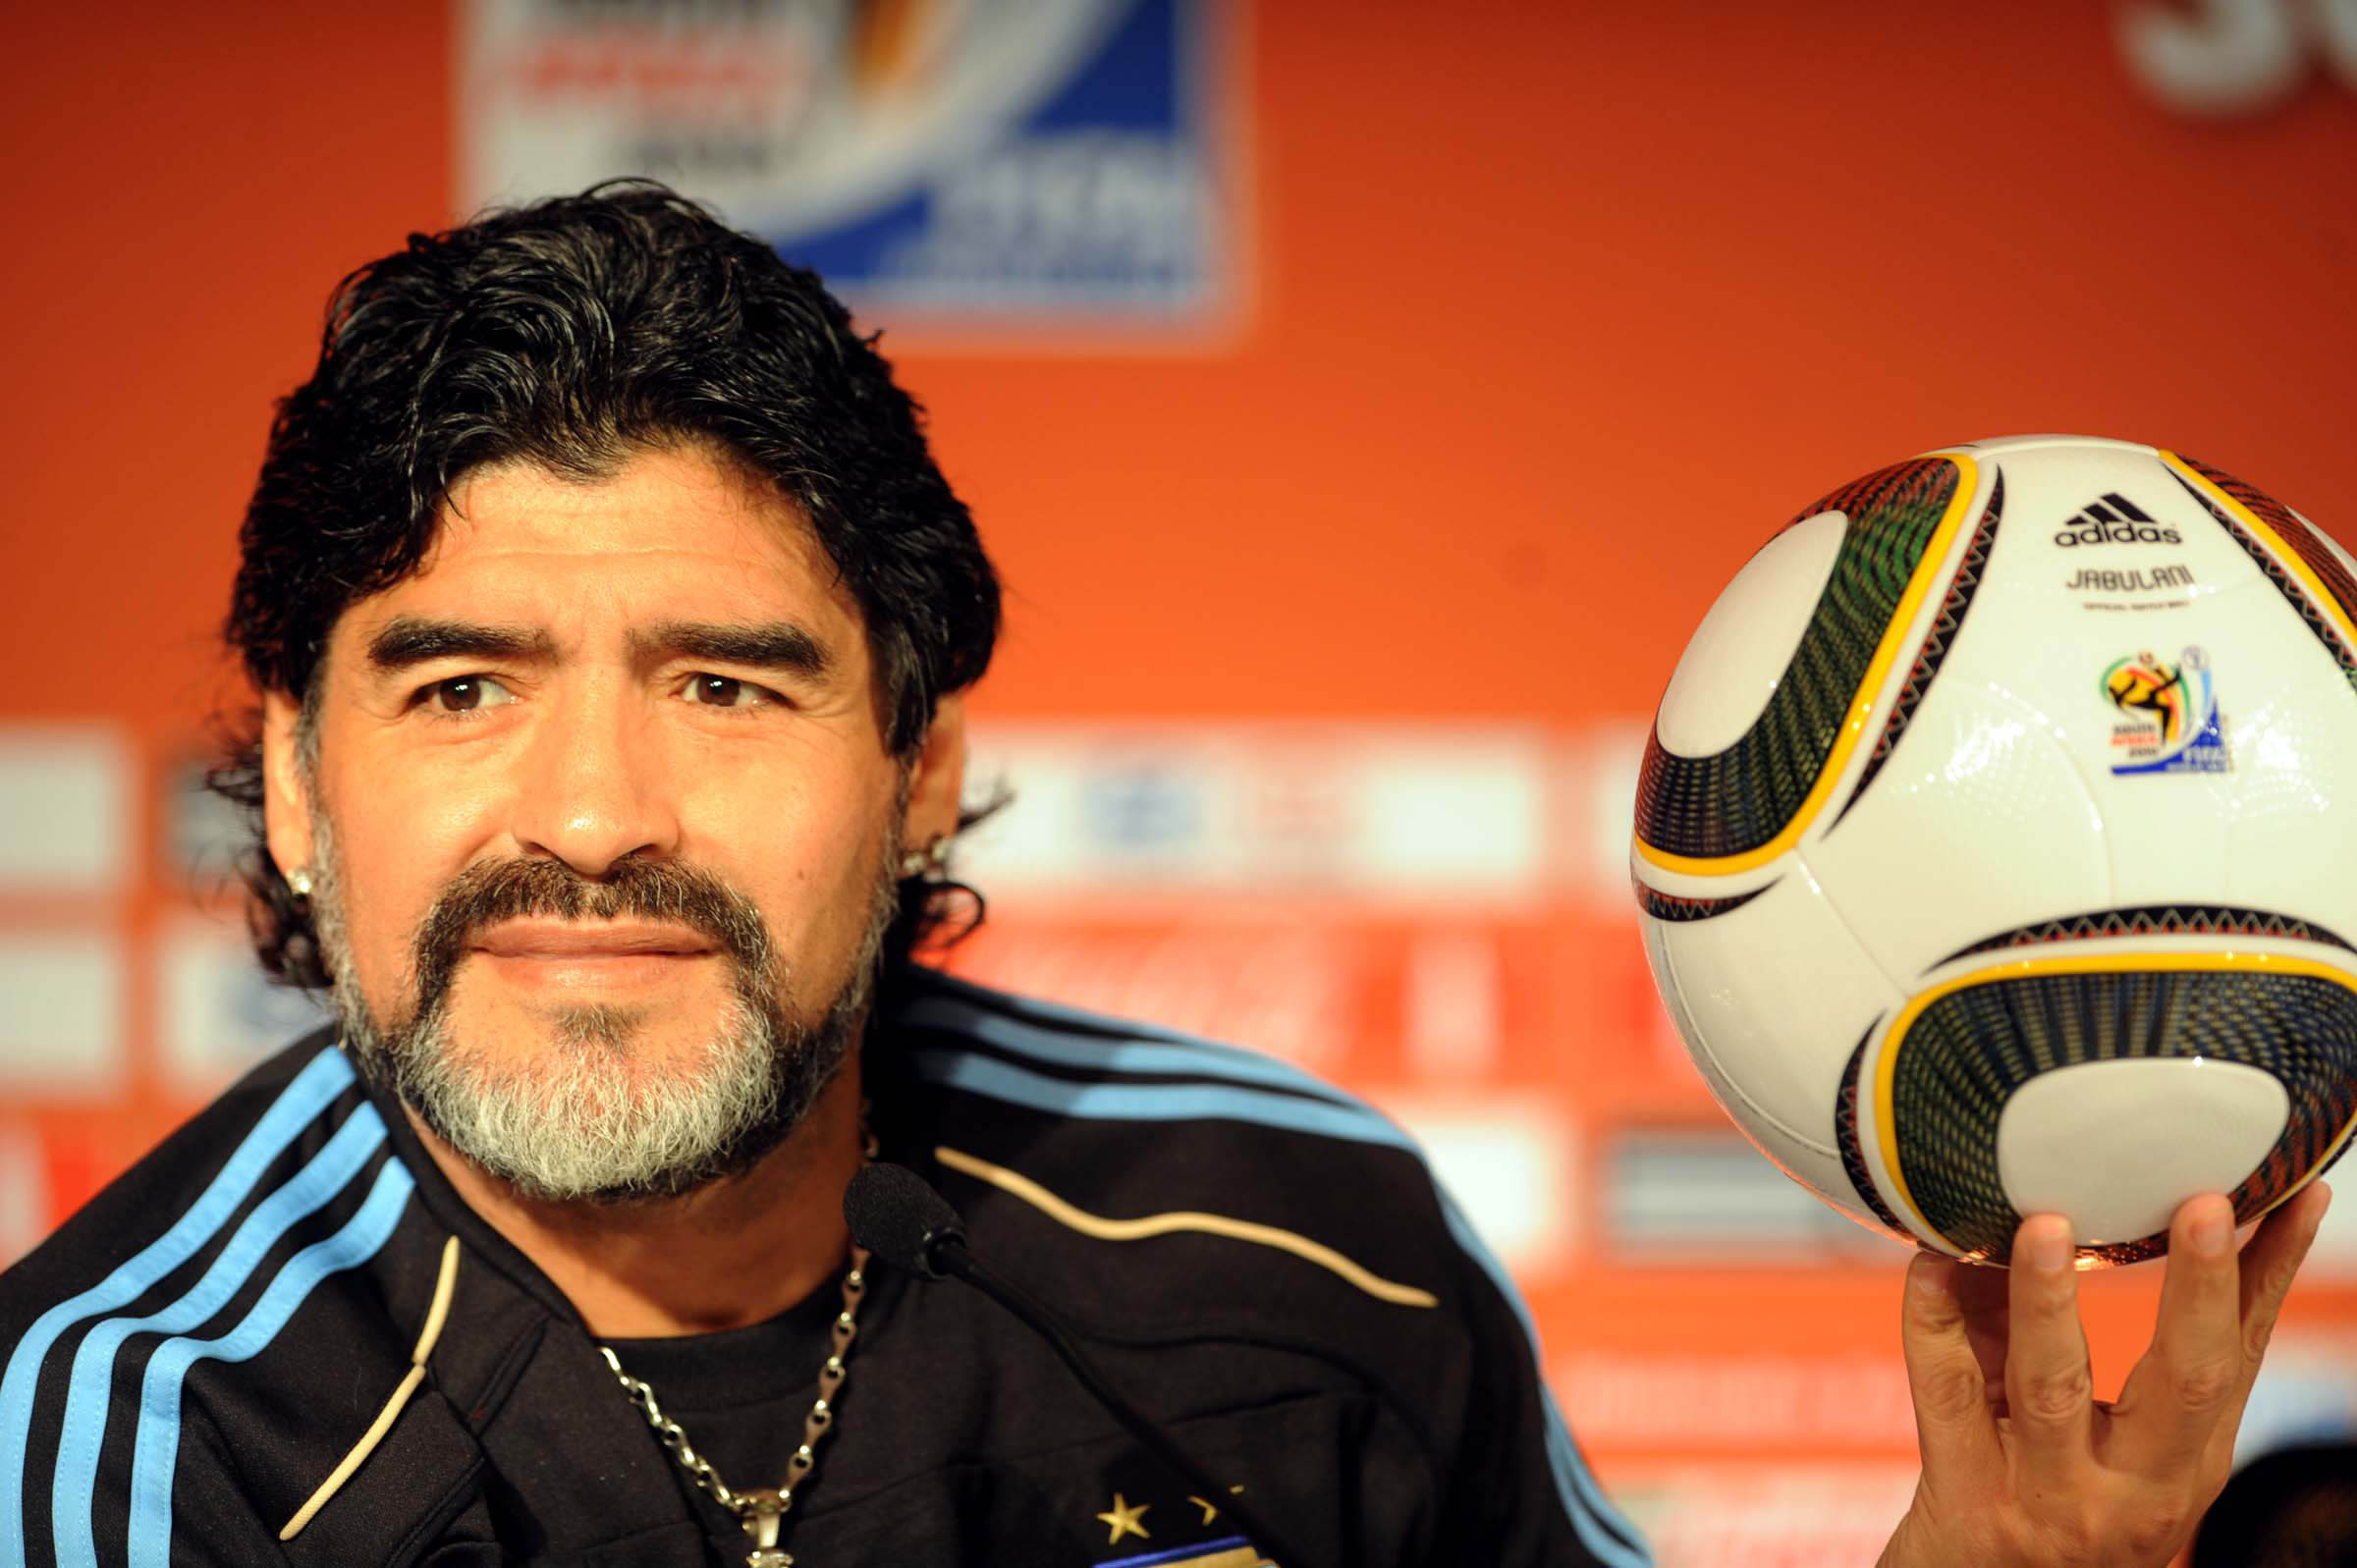 Guardiola, Mourinho y Zidane despiden a Diego Maradona